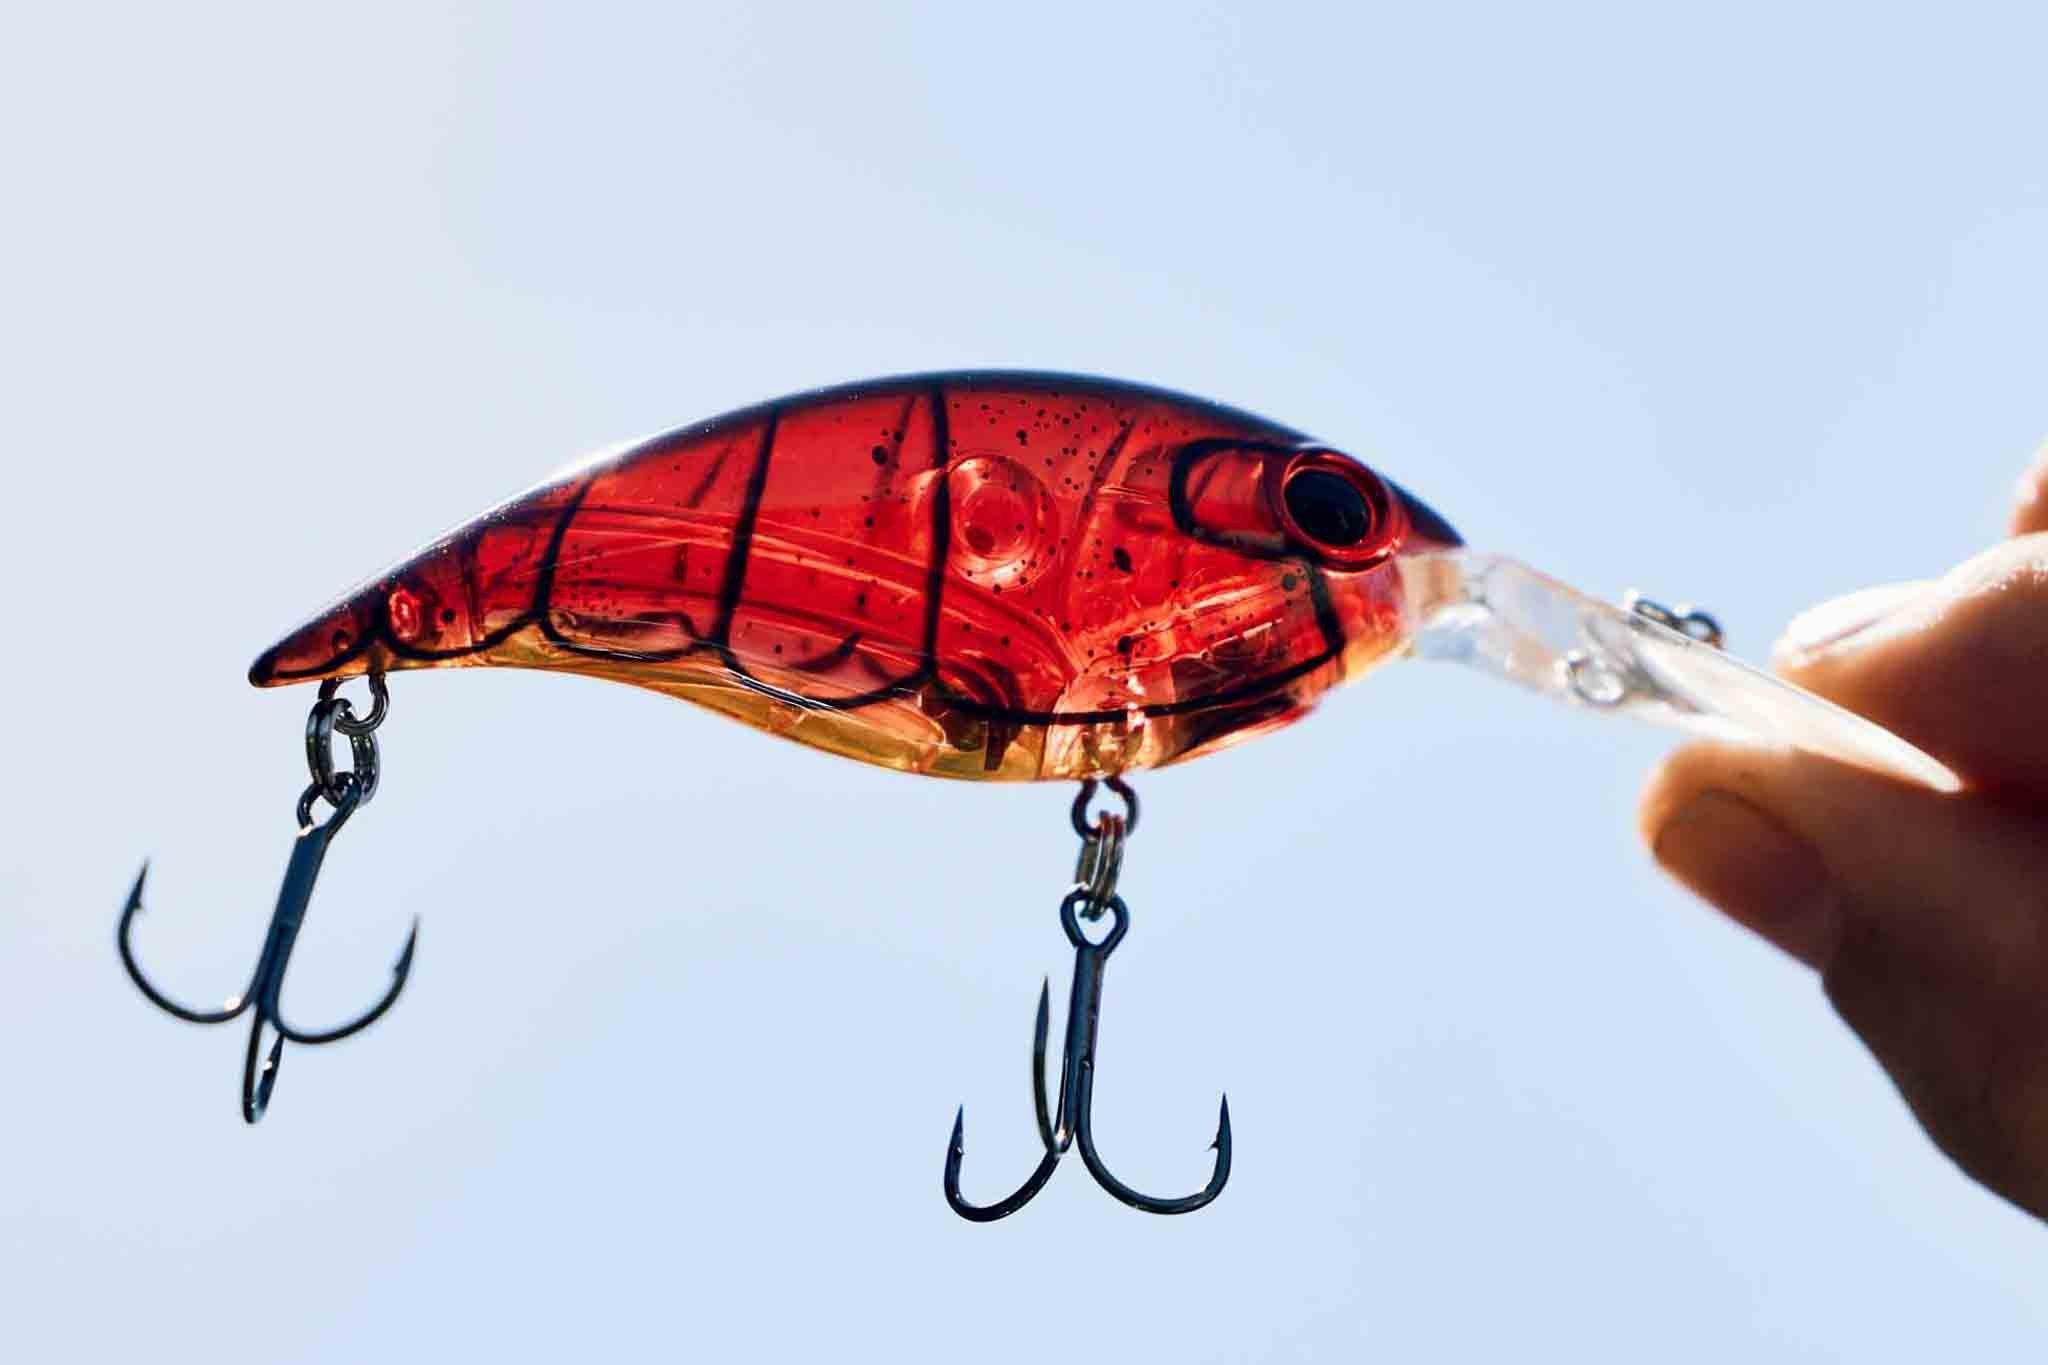 Berkley Fishing Gear - Buy Online - 17189879